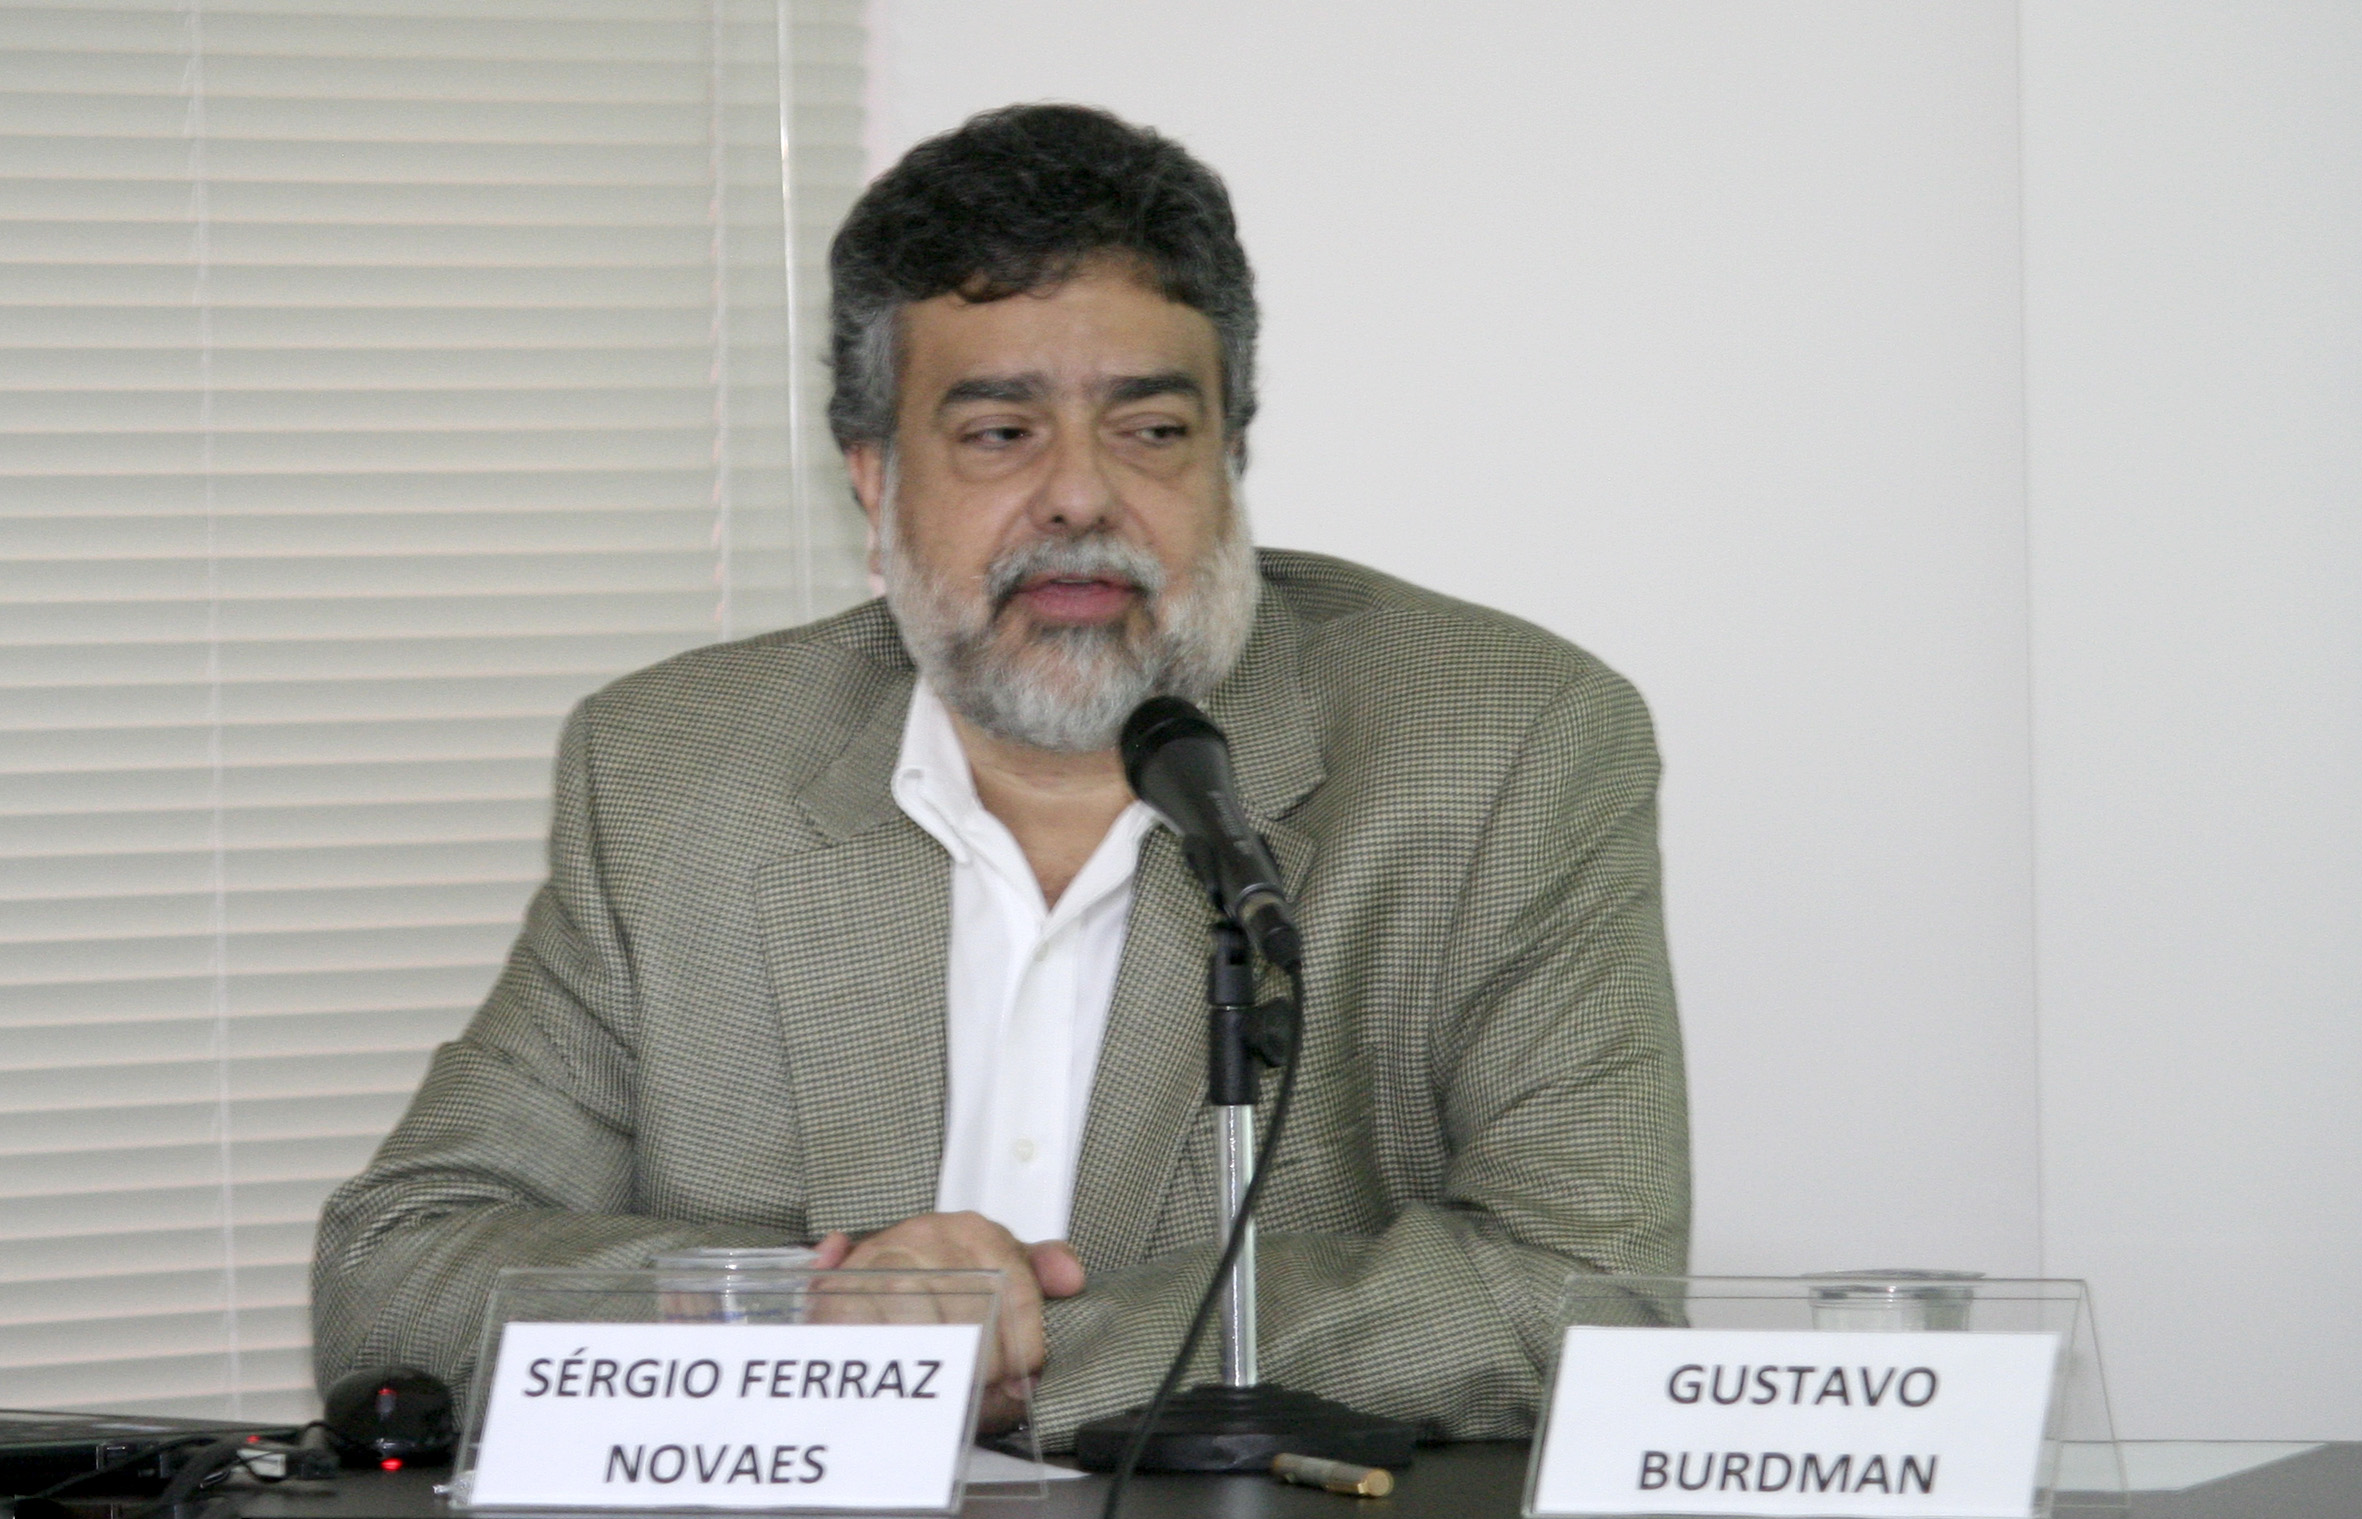 Sérgio Ferraz Novaes